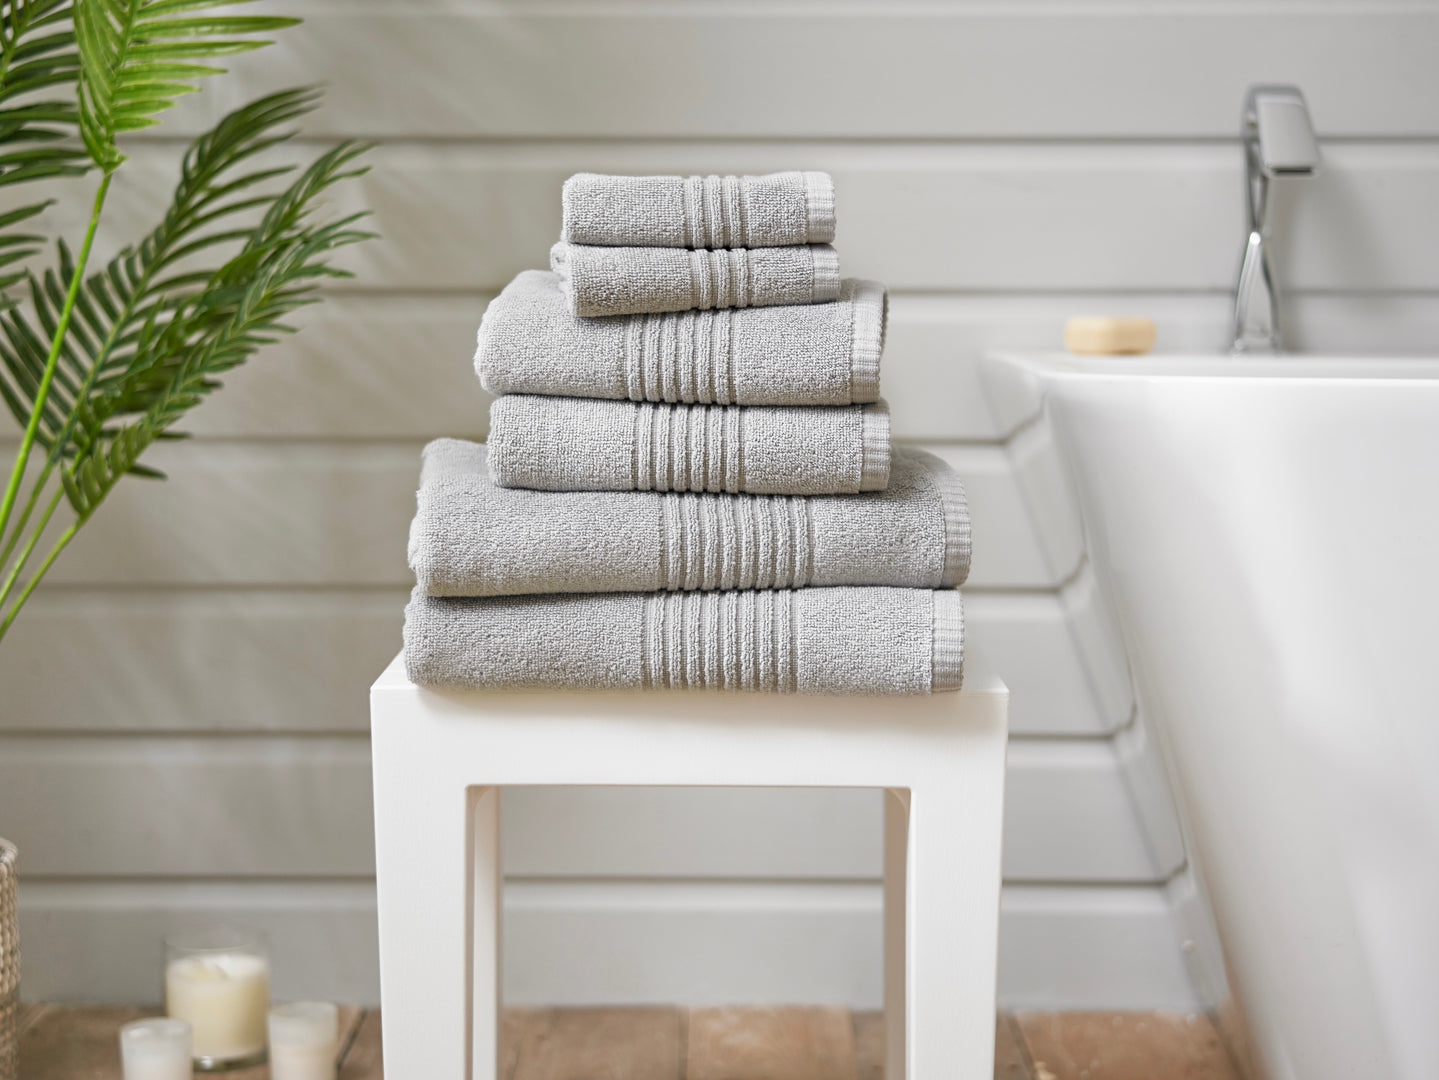 Quik Dri Cotton Towels